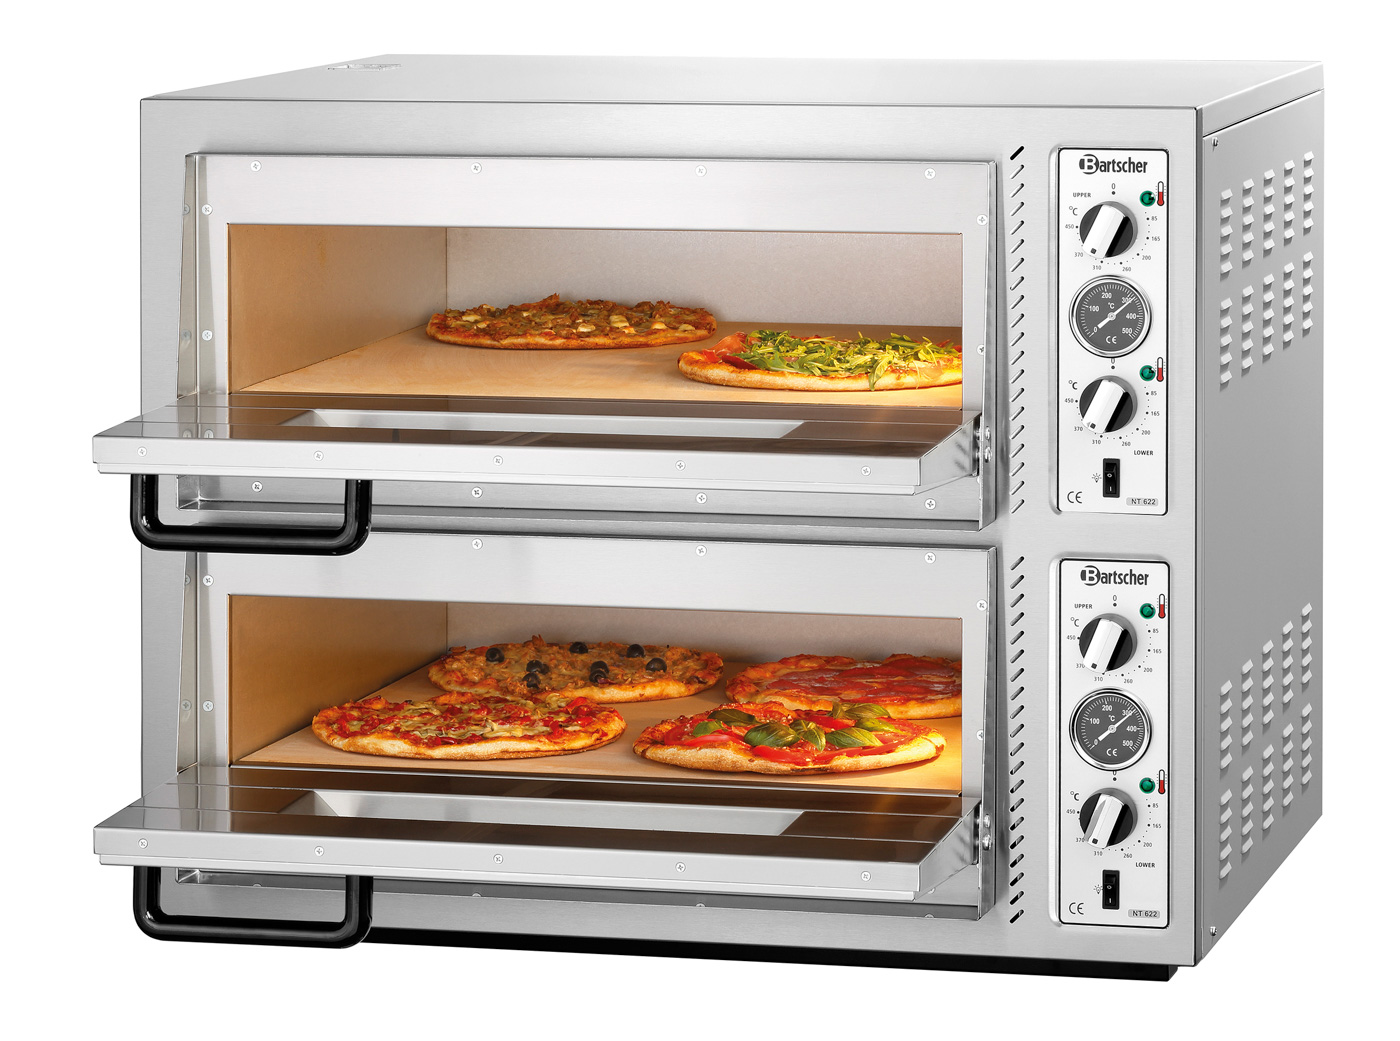 Bartscher Pizzaofen NT 622 | Spannung: 400 V |Maße: 88,5 x 79 x 71,0 cm. Gewicht: 102,8 kg